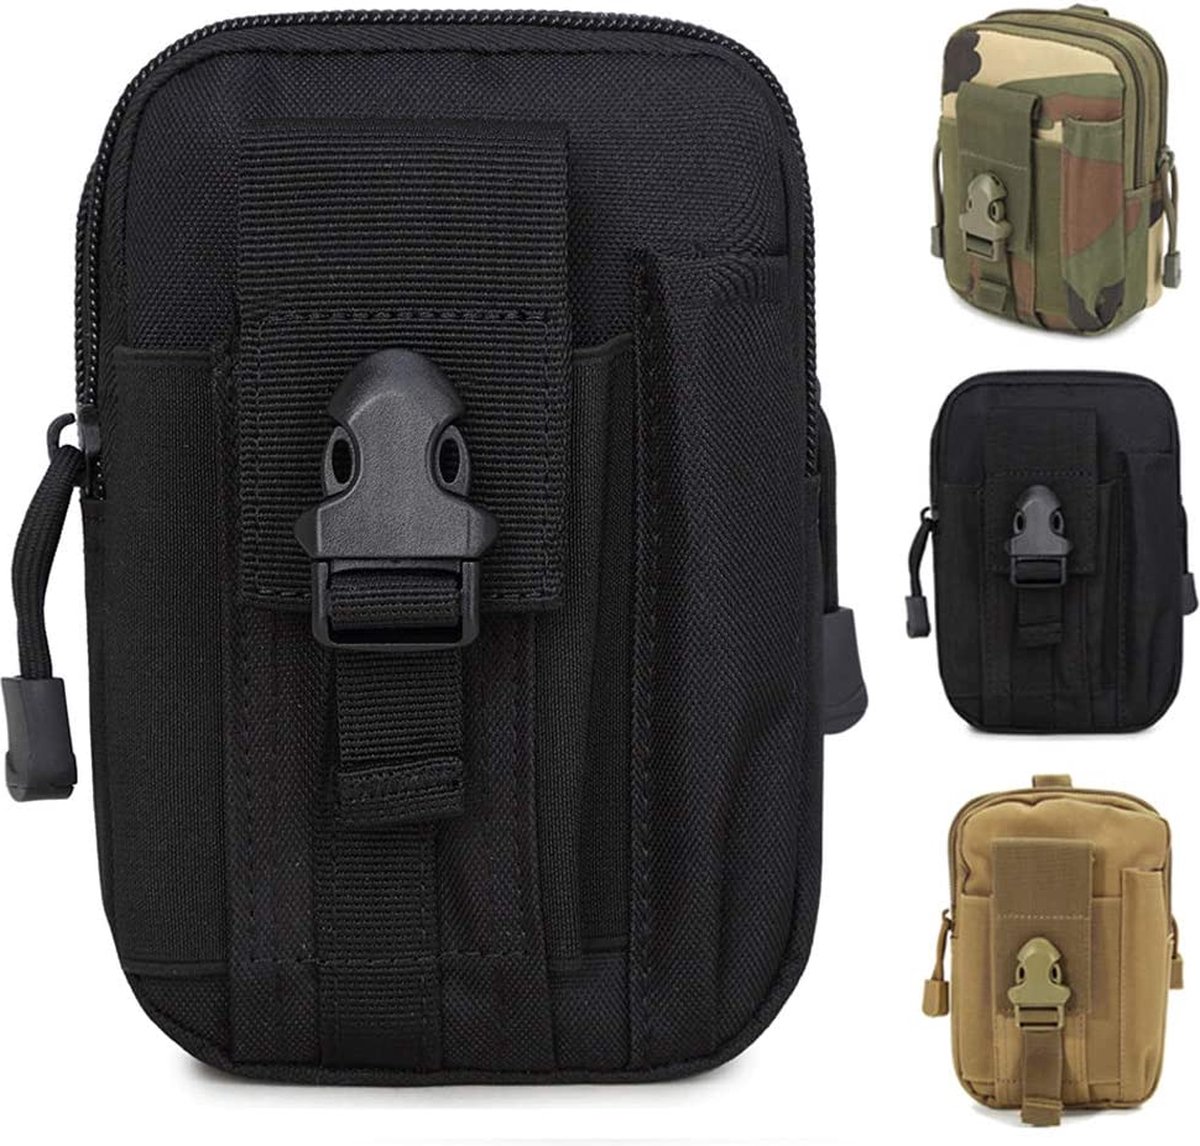 ZhaoCo tactisch heuptasje, nylon, militair, compact, Molle EDC tas, gordeltas, buidel, getailleerd, tas voor gadgets, mobiele telefoon, voor op de camping, tijdens het wandelen en het reizen